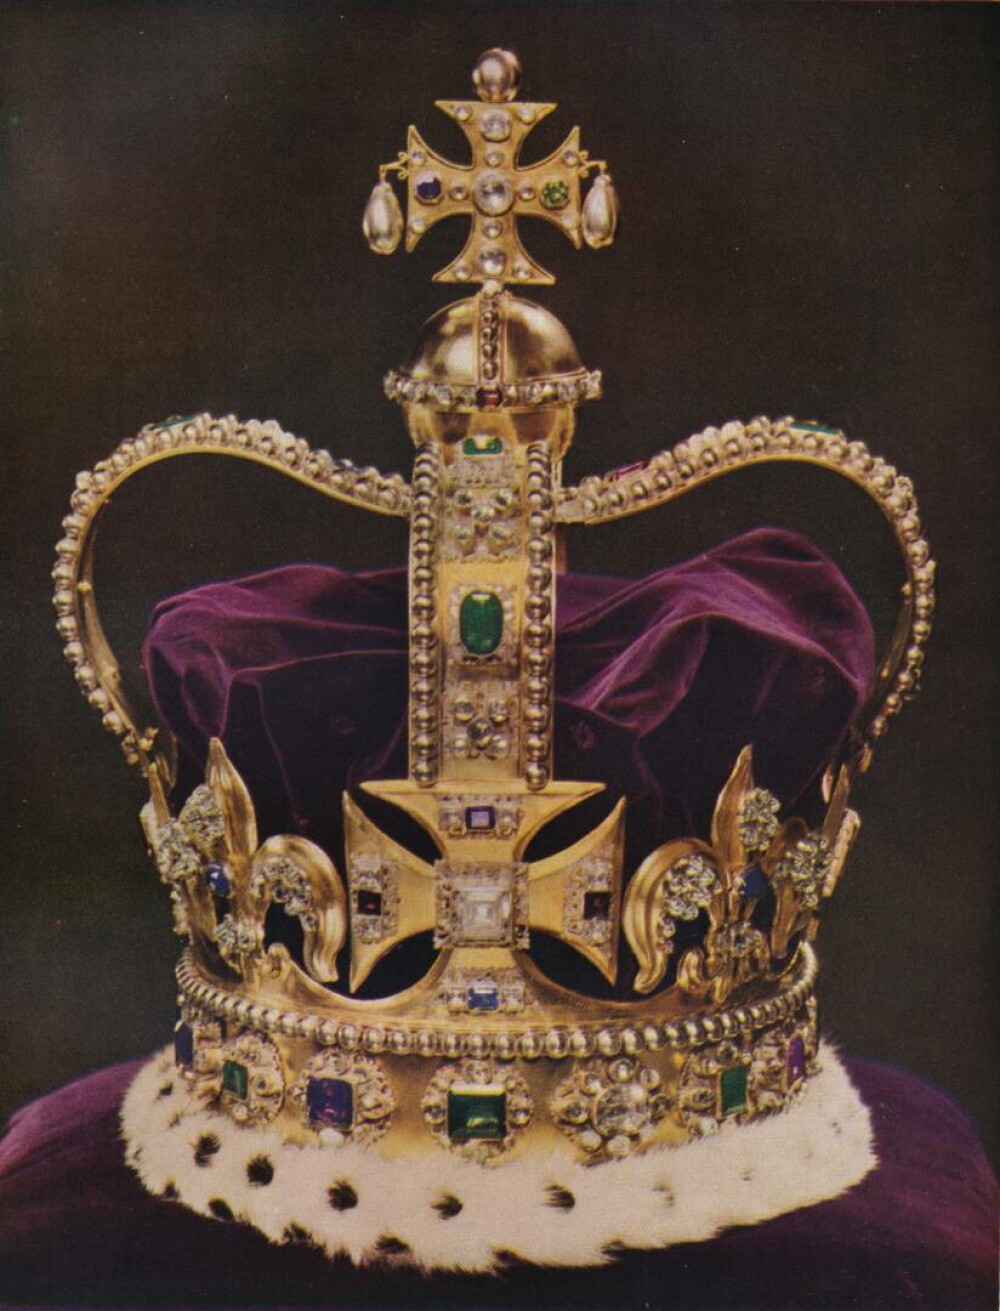 Cum arată coroanele folosite la Încoronarea Regelui Charles al III-lea - Imaginea 2